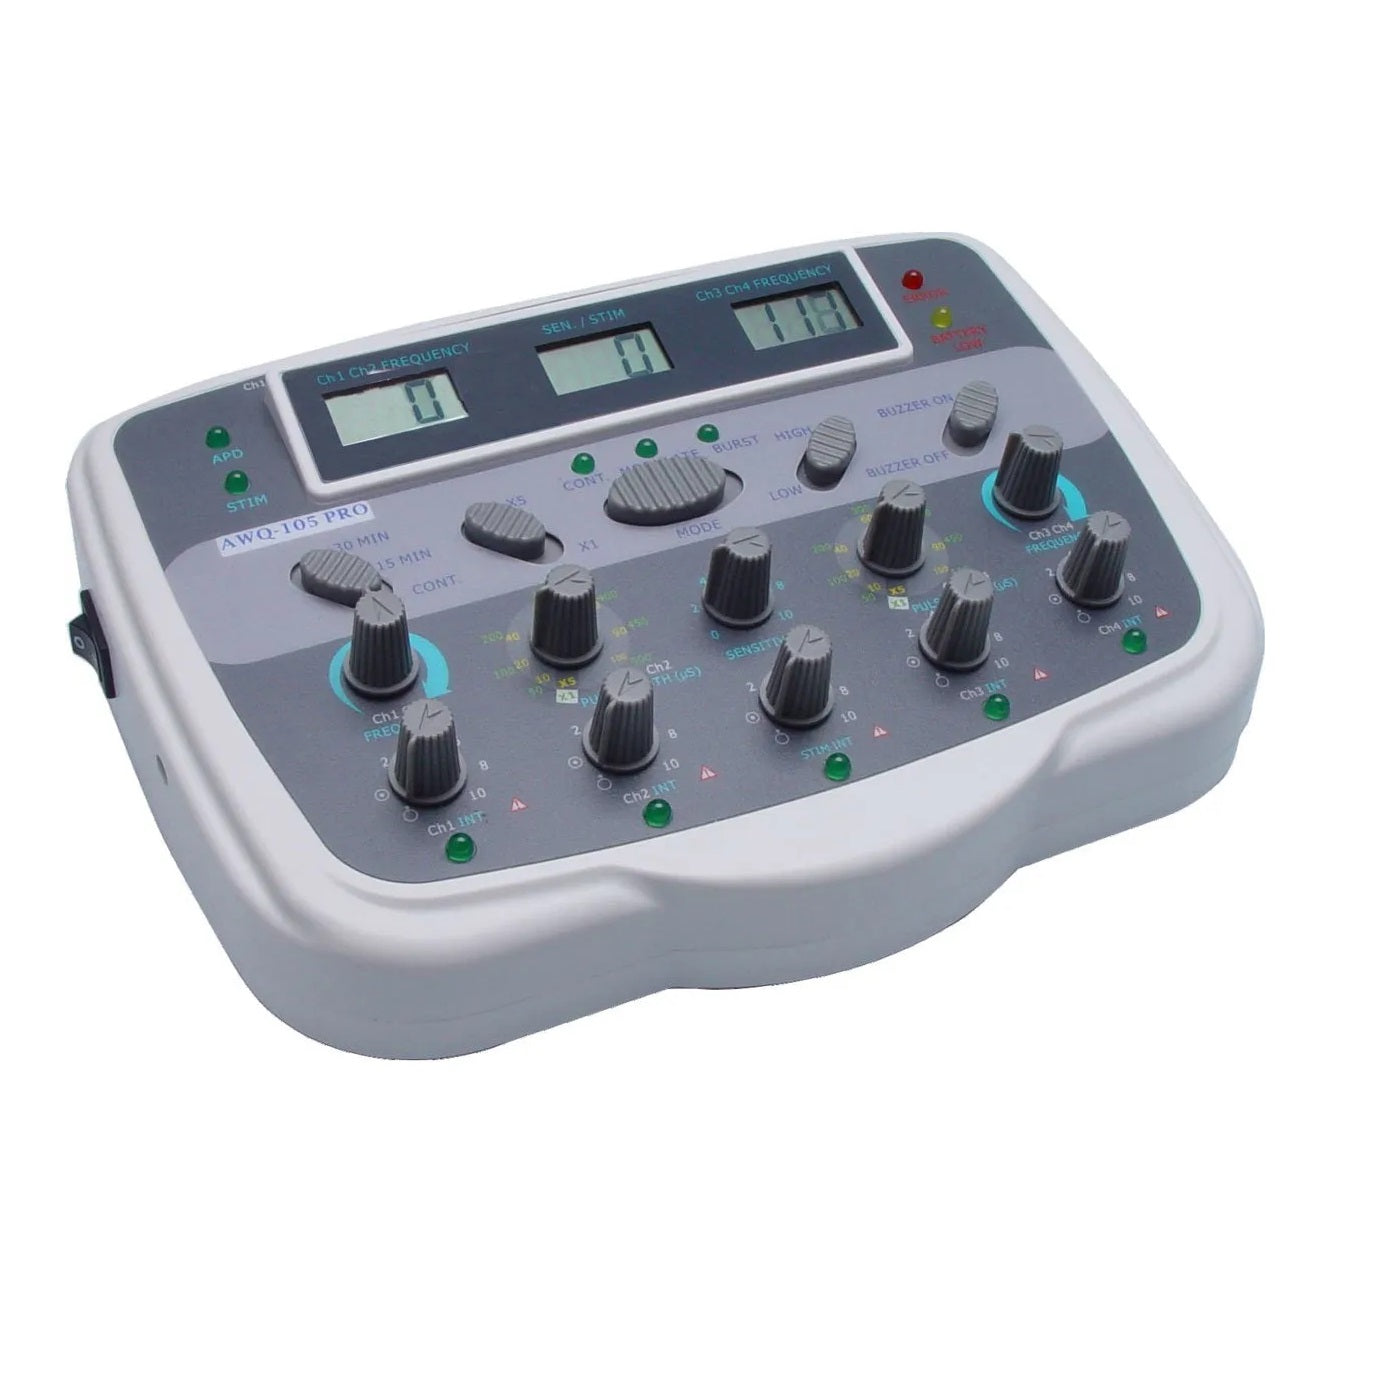 AWQ-105 Pro Acupuncture Stimulator